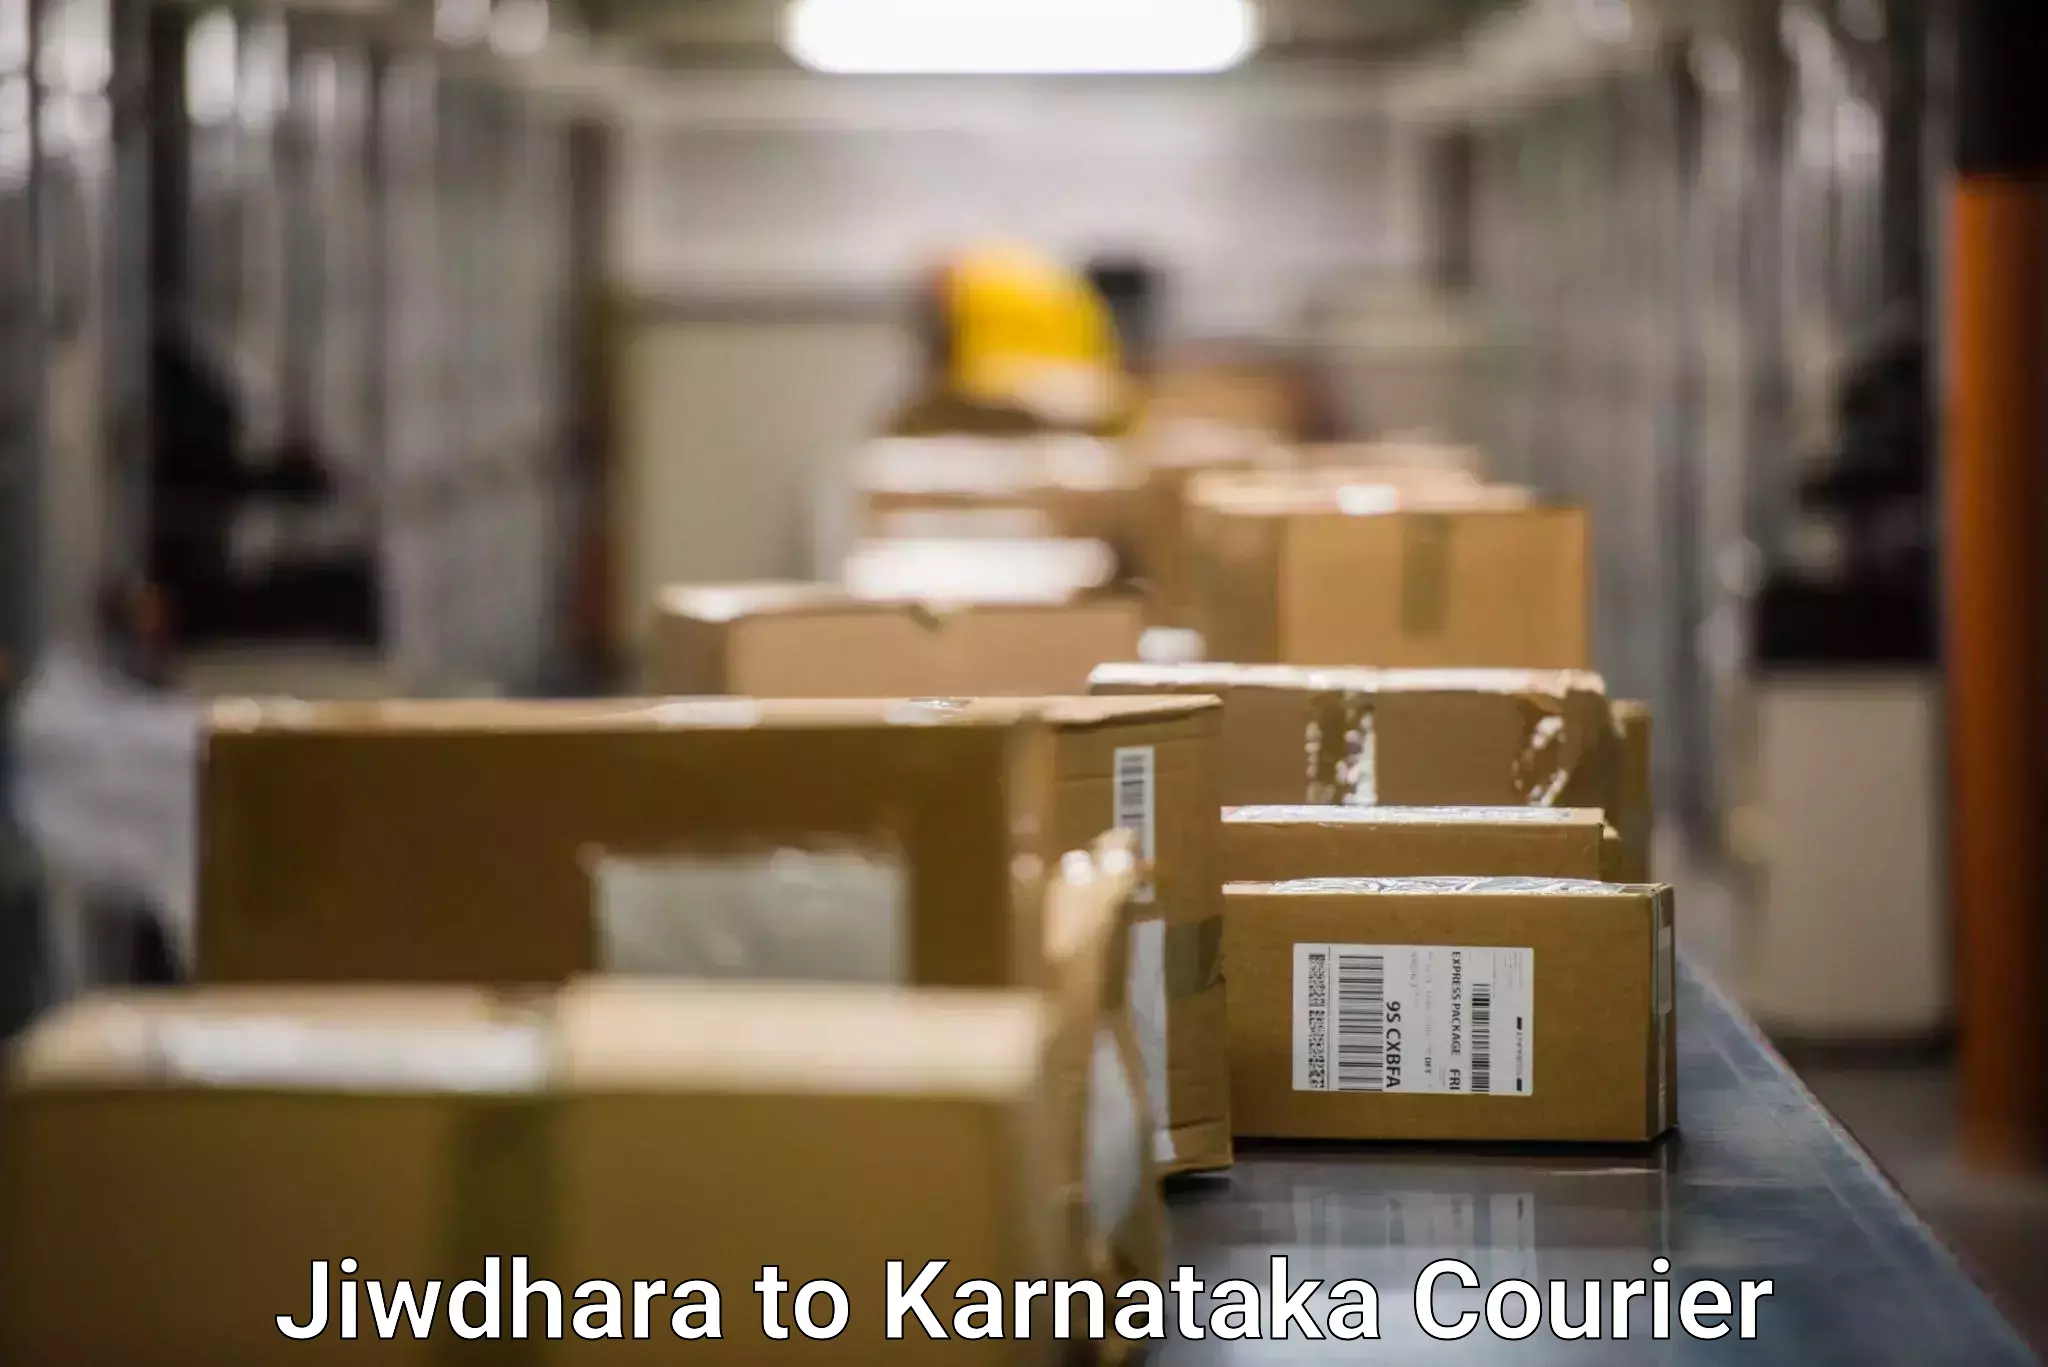 Round-the-clock parcel delivery Jiwdhara to Basavana Bagewadi